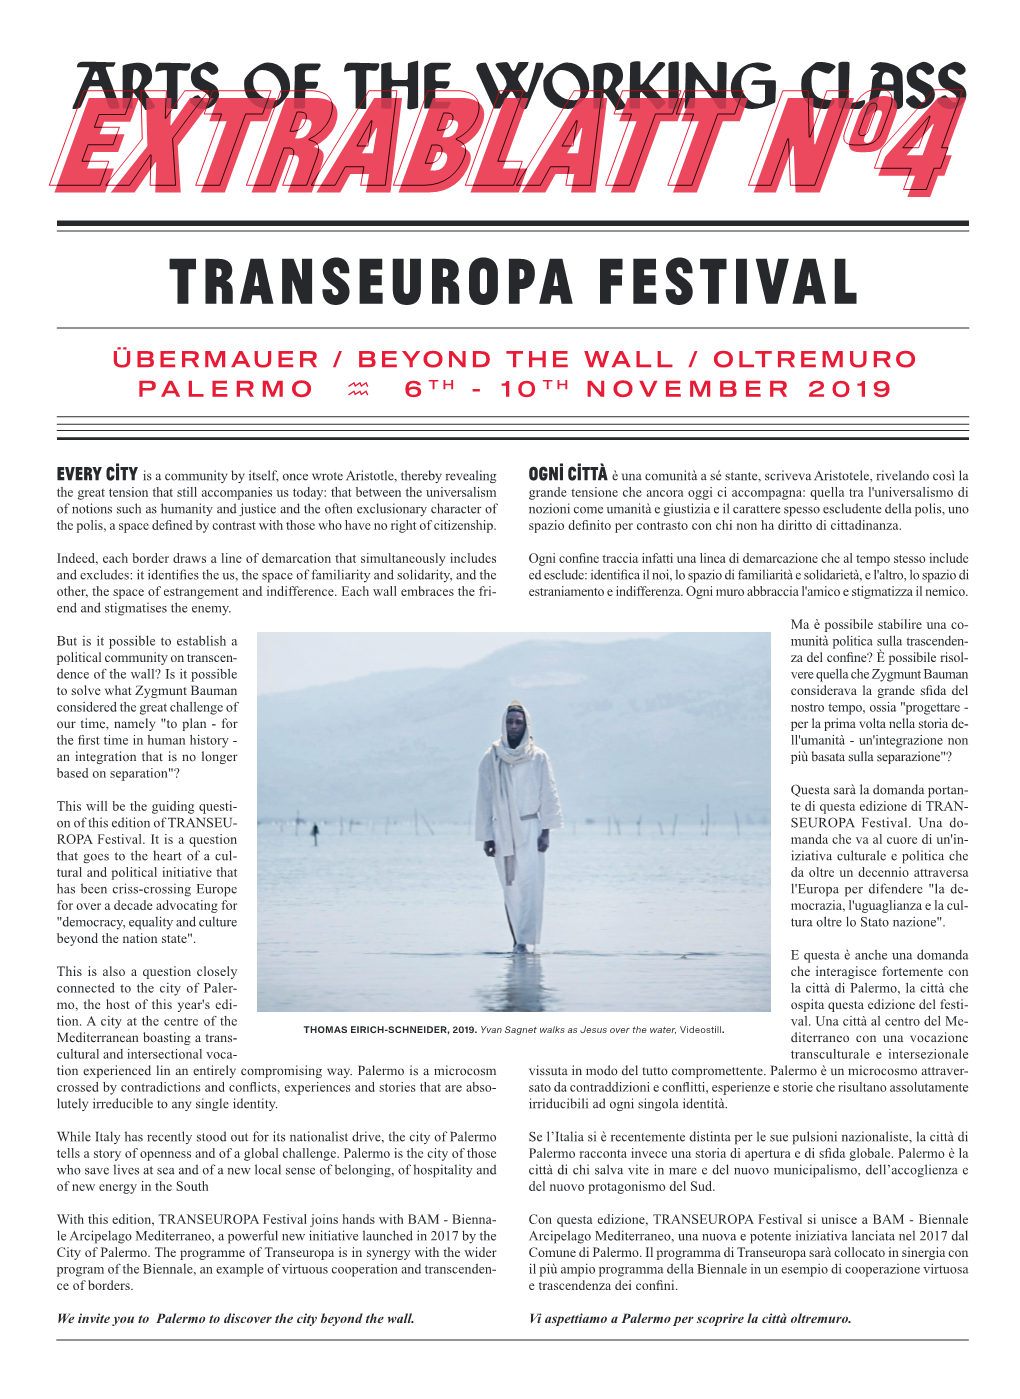 Transeuropa Festıval